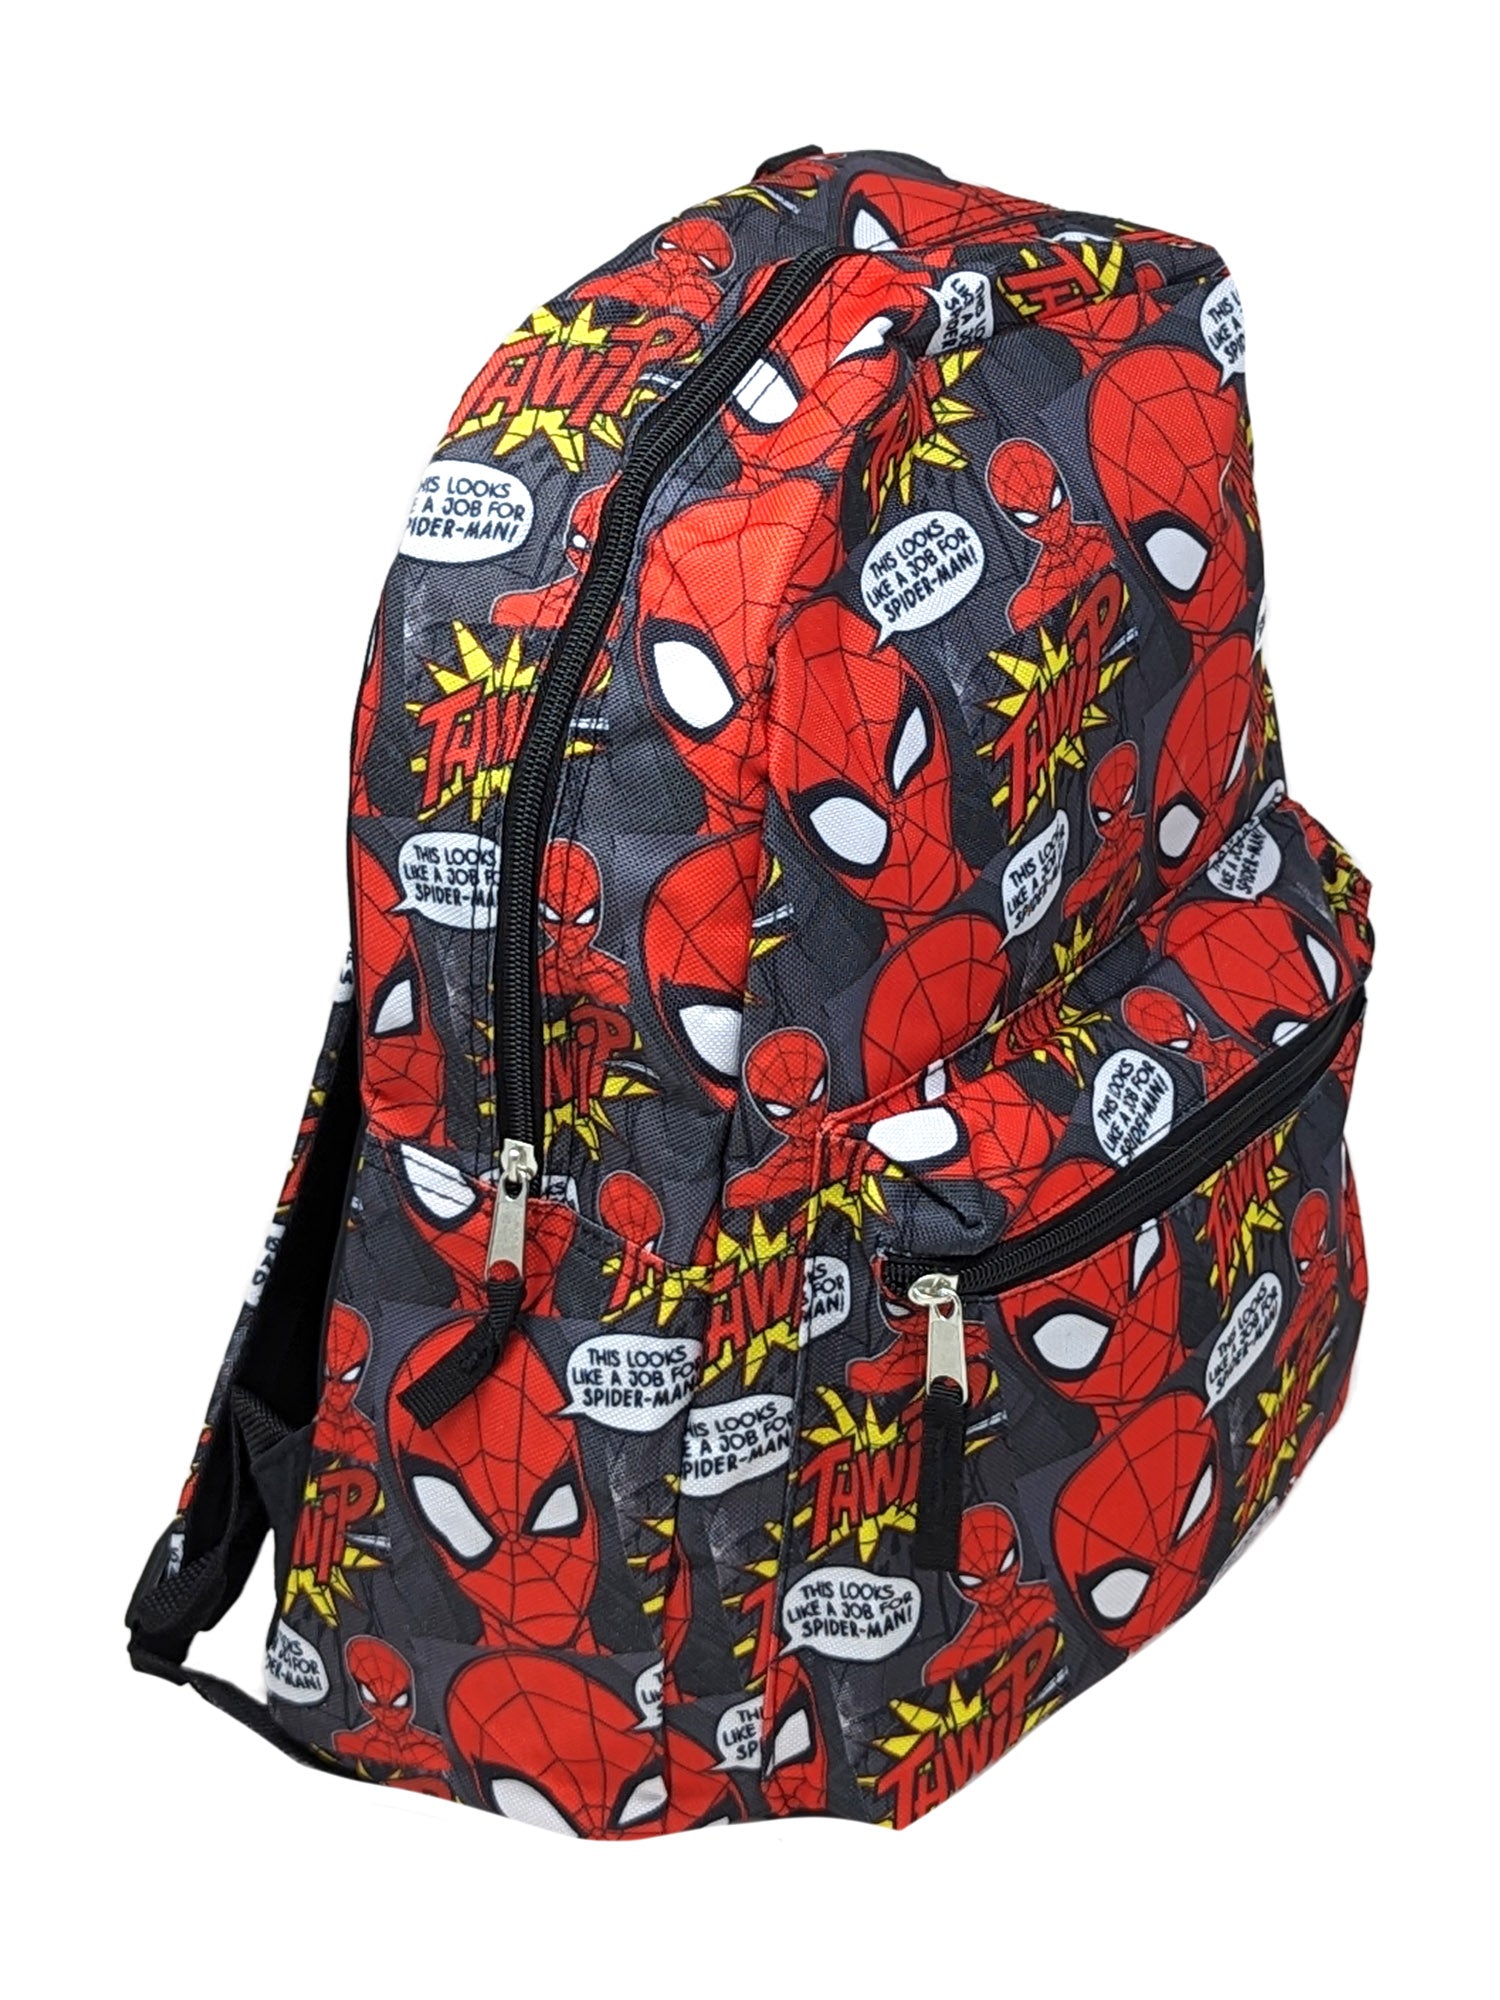 Spider-Man Boys Marvel Backpack 16" Superhero All-over Print w/ Front Pocket